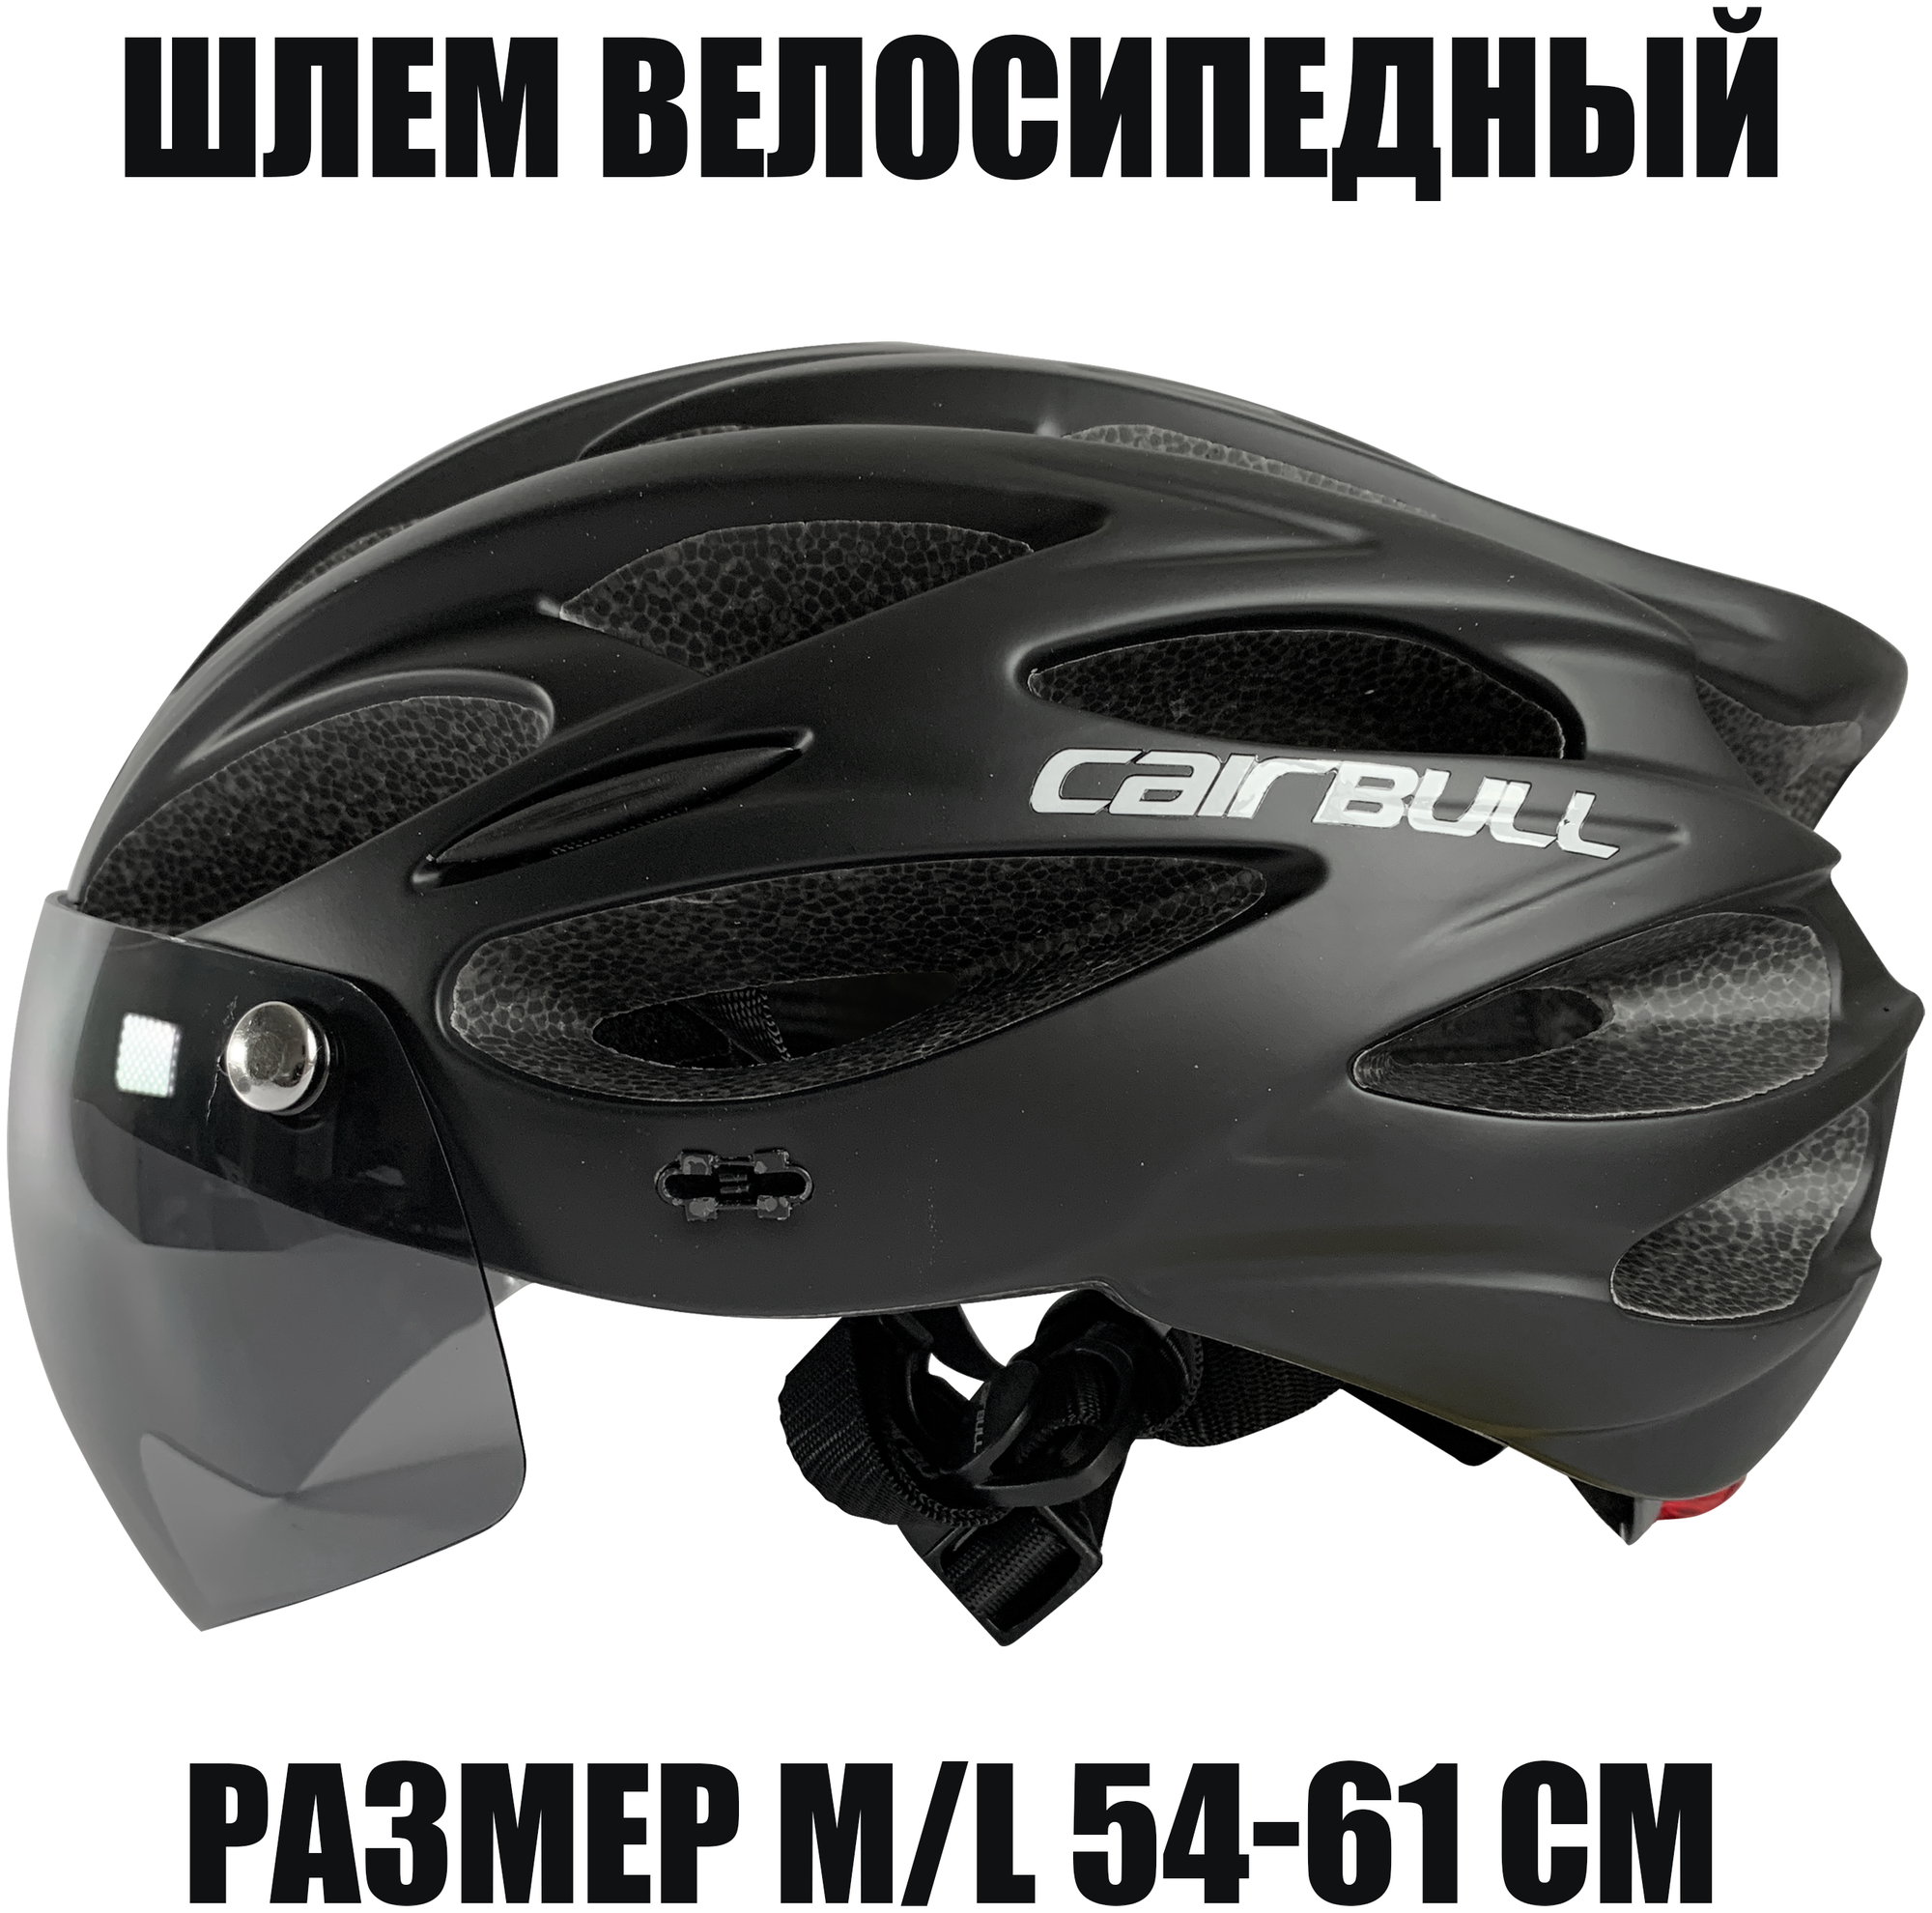 Шлем велосипедный со съемным визором (размер M/L 54-61 см, цвет черный)